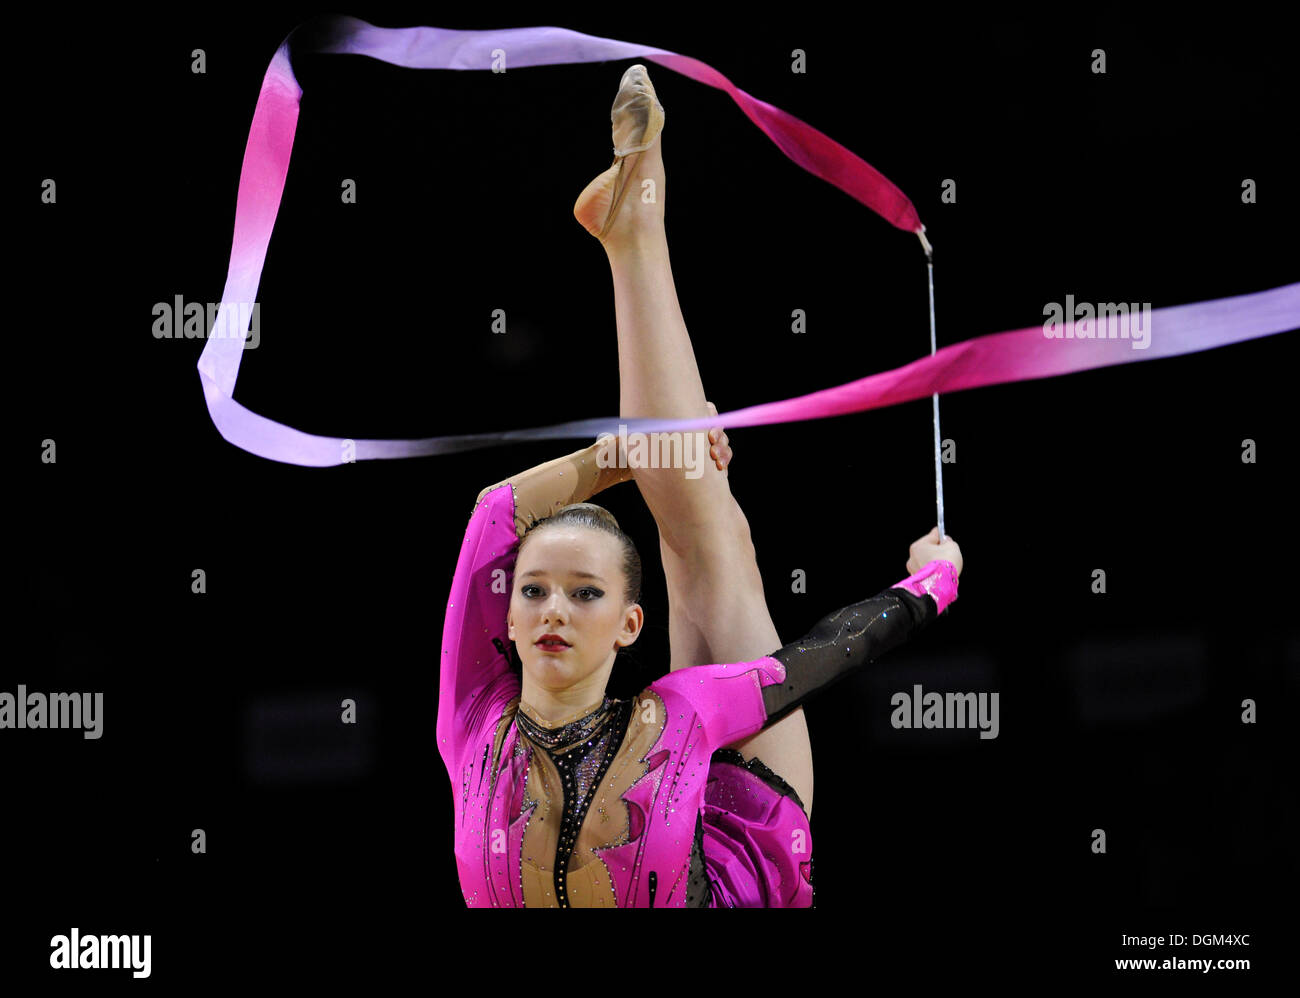 387 photos et images de Ruban Gymnastique Rythmique - Getty Images